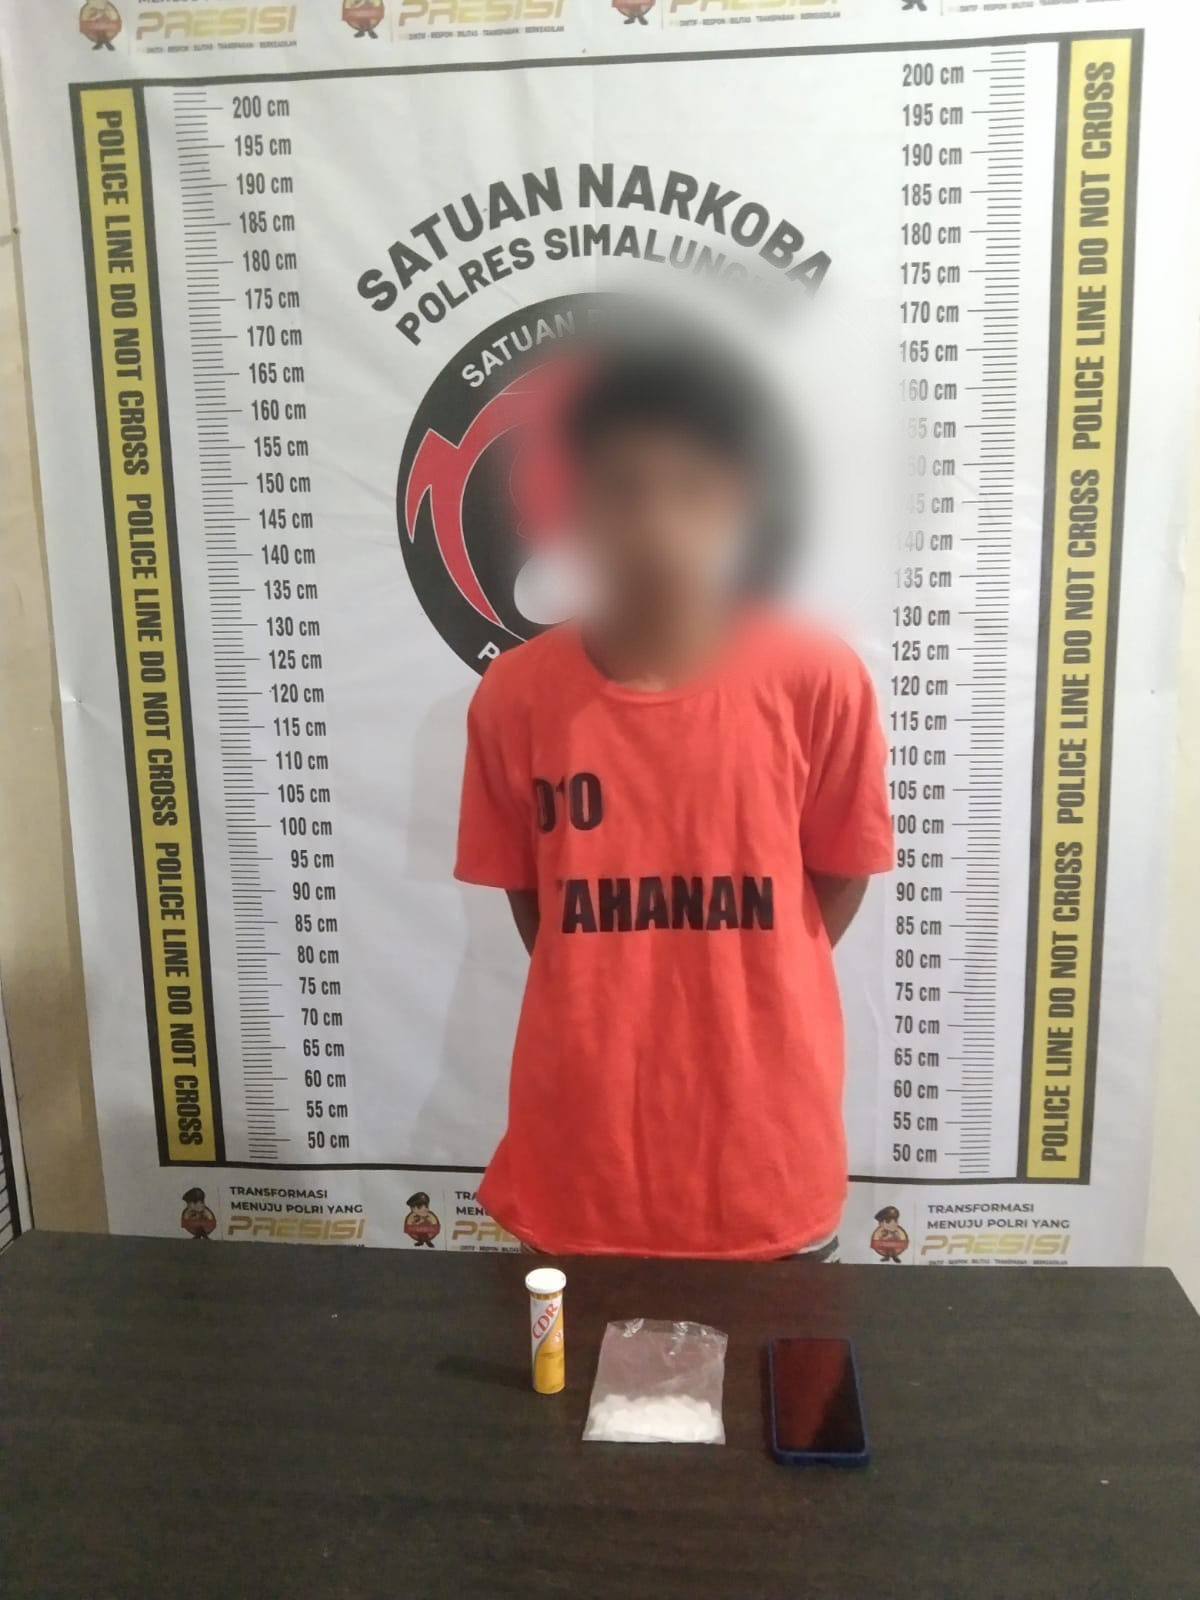 Polres Simalungun Berhasil Ungkap Kasus Narkoba, Pelajar 16 Tahun Ditangkap ada 25,76 gram Sabu